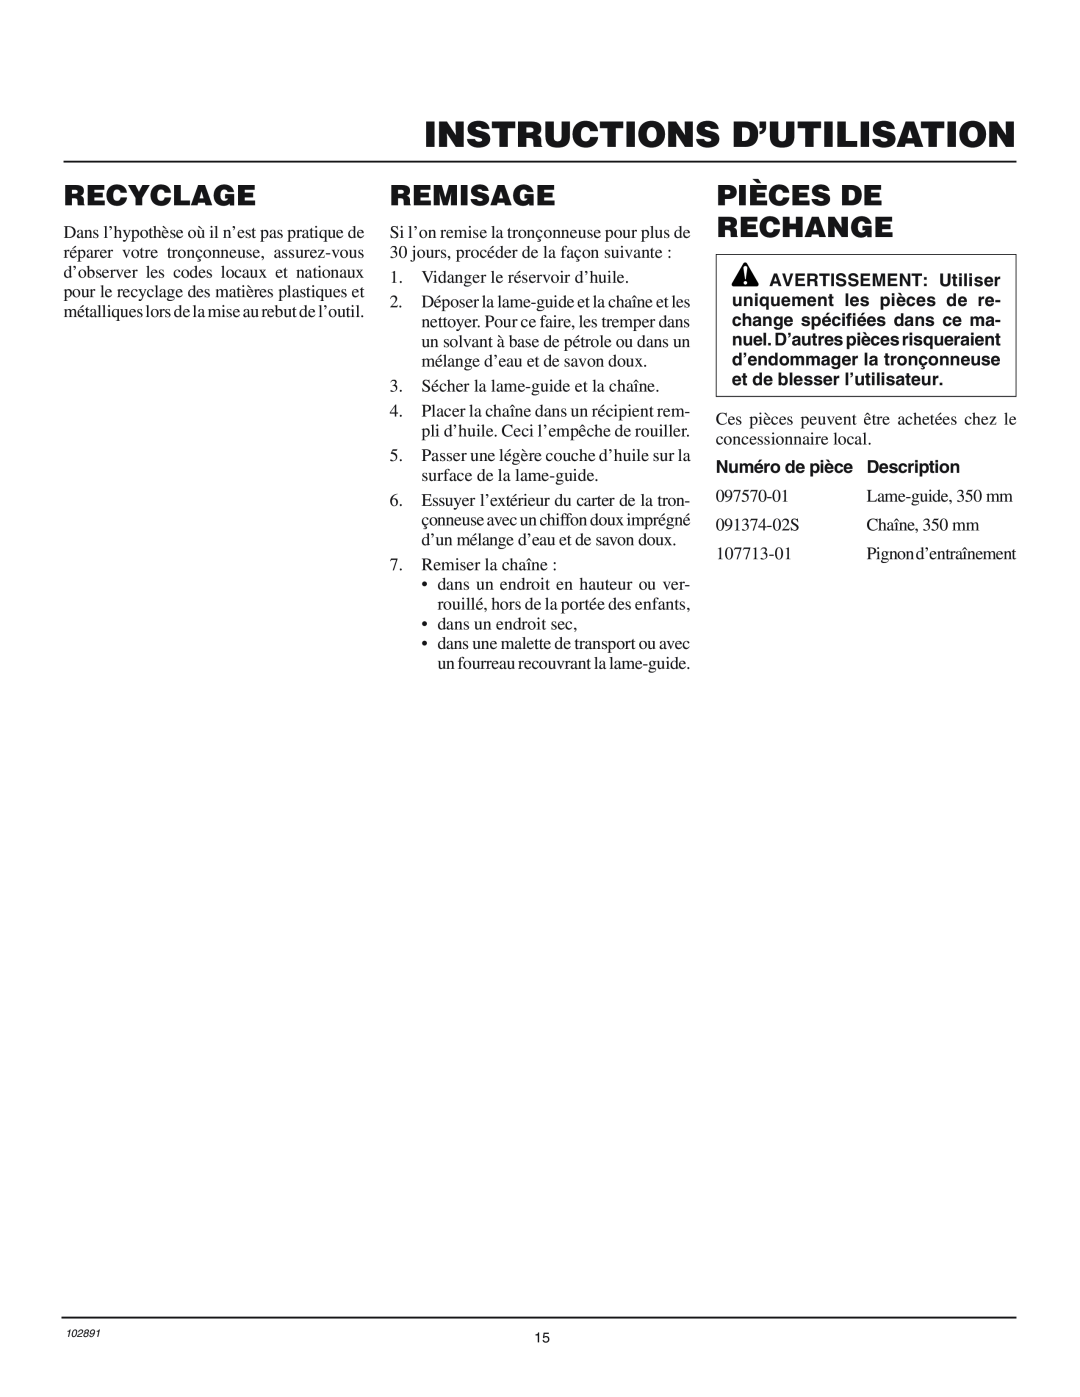 Desa 100271-01 Recyclage, Remisage, Pièces De Rechange, Numéro de pièce, Description, Instructions D’Utilisation 